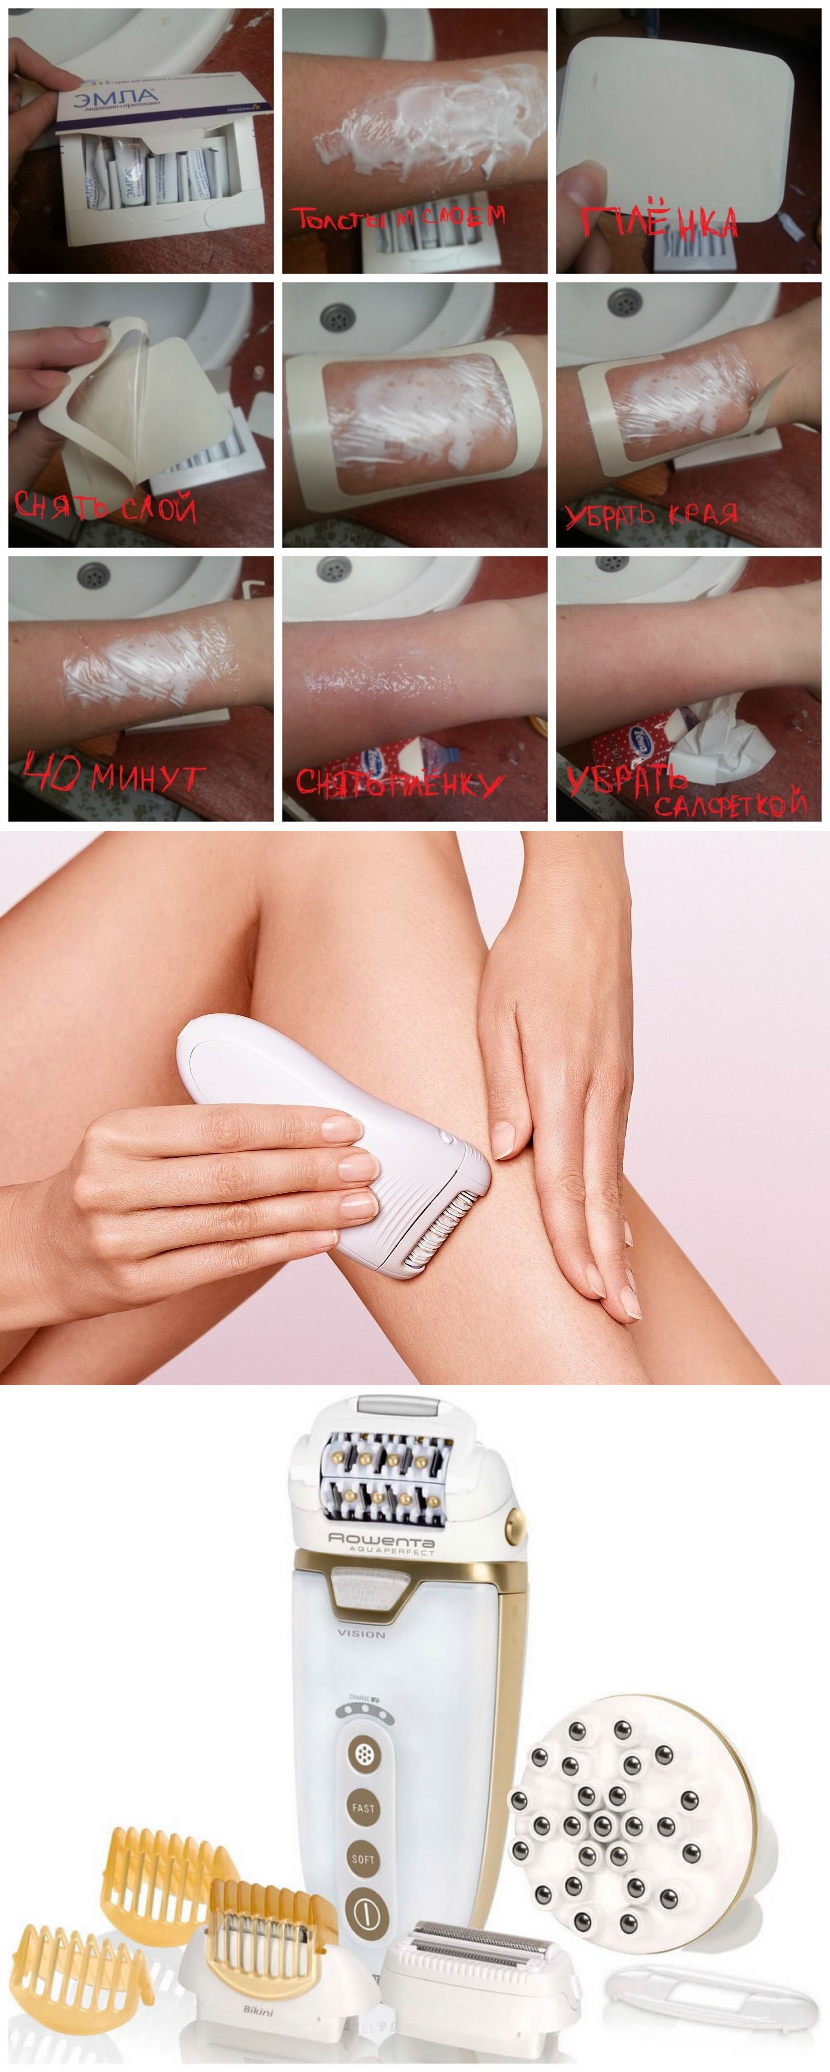 Электроэпиляторы — выбор в пользу гладкой кожи в интимных зонах. как пользоваться эпилятором для зоны бикини в домашних условиях